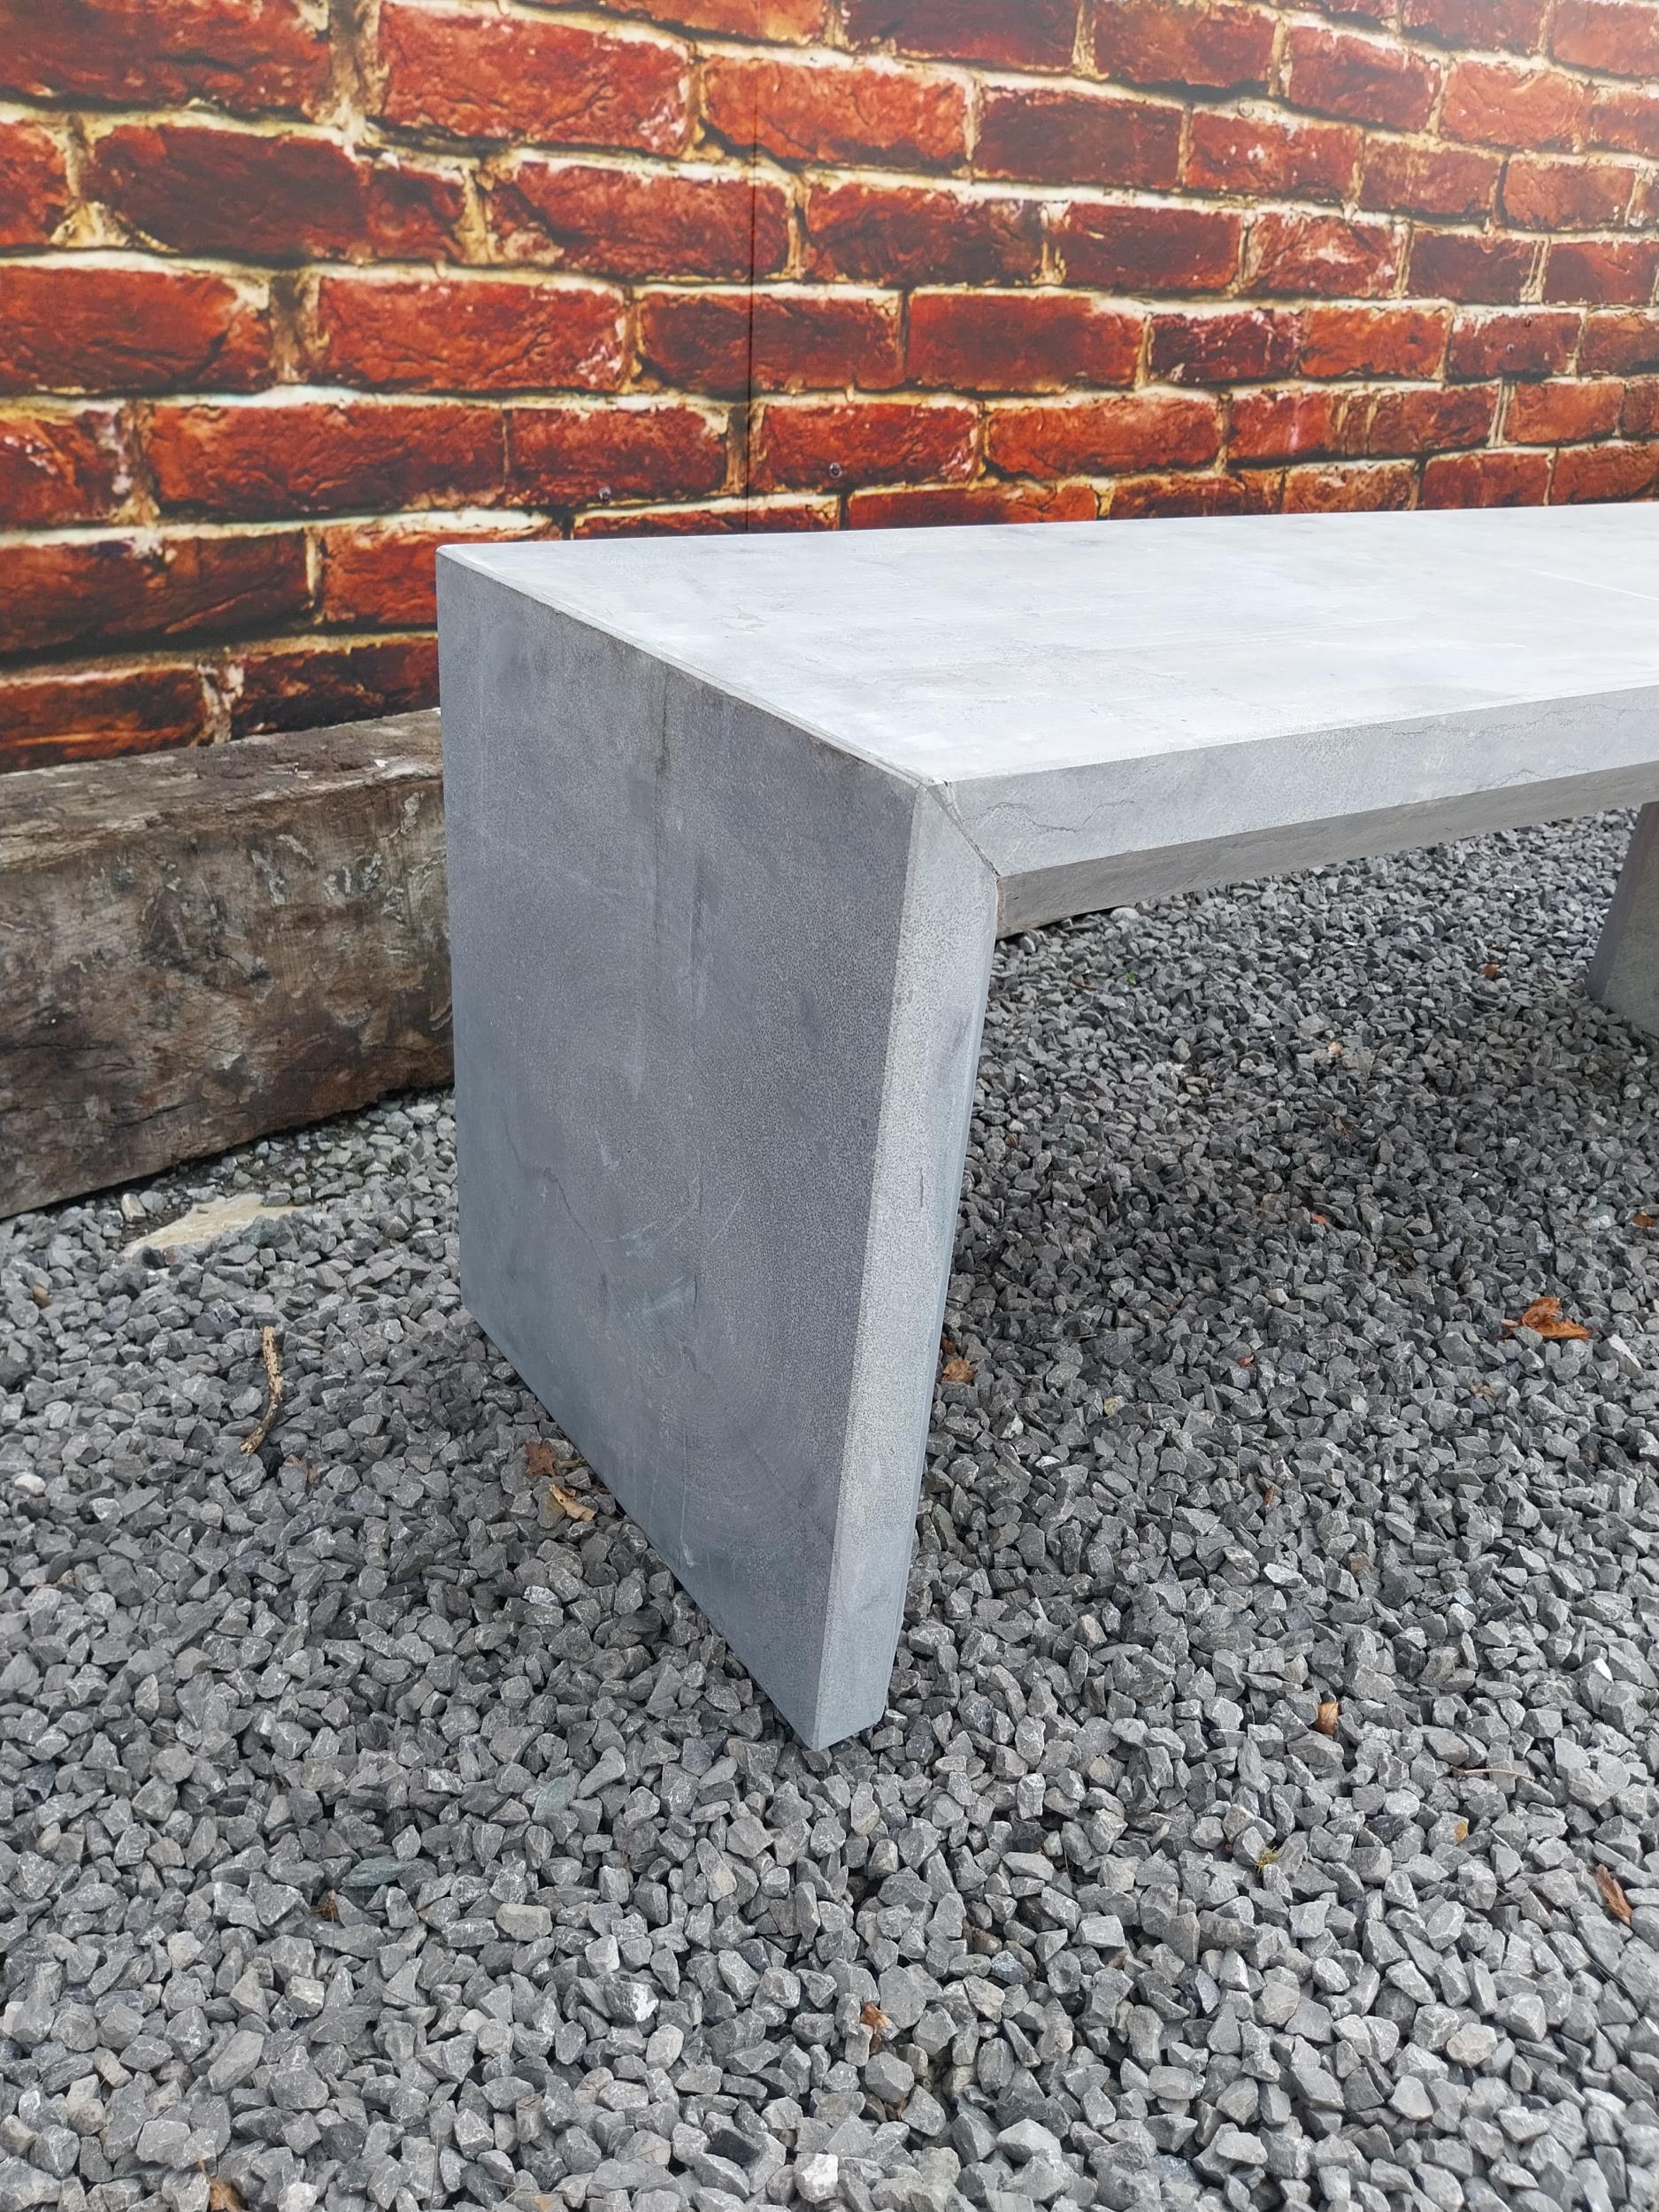 Slate garden bench {45 cm H x 120 cm W x 40 cm D}. - Image 4 of 4